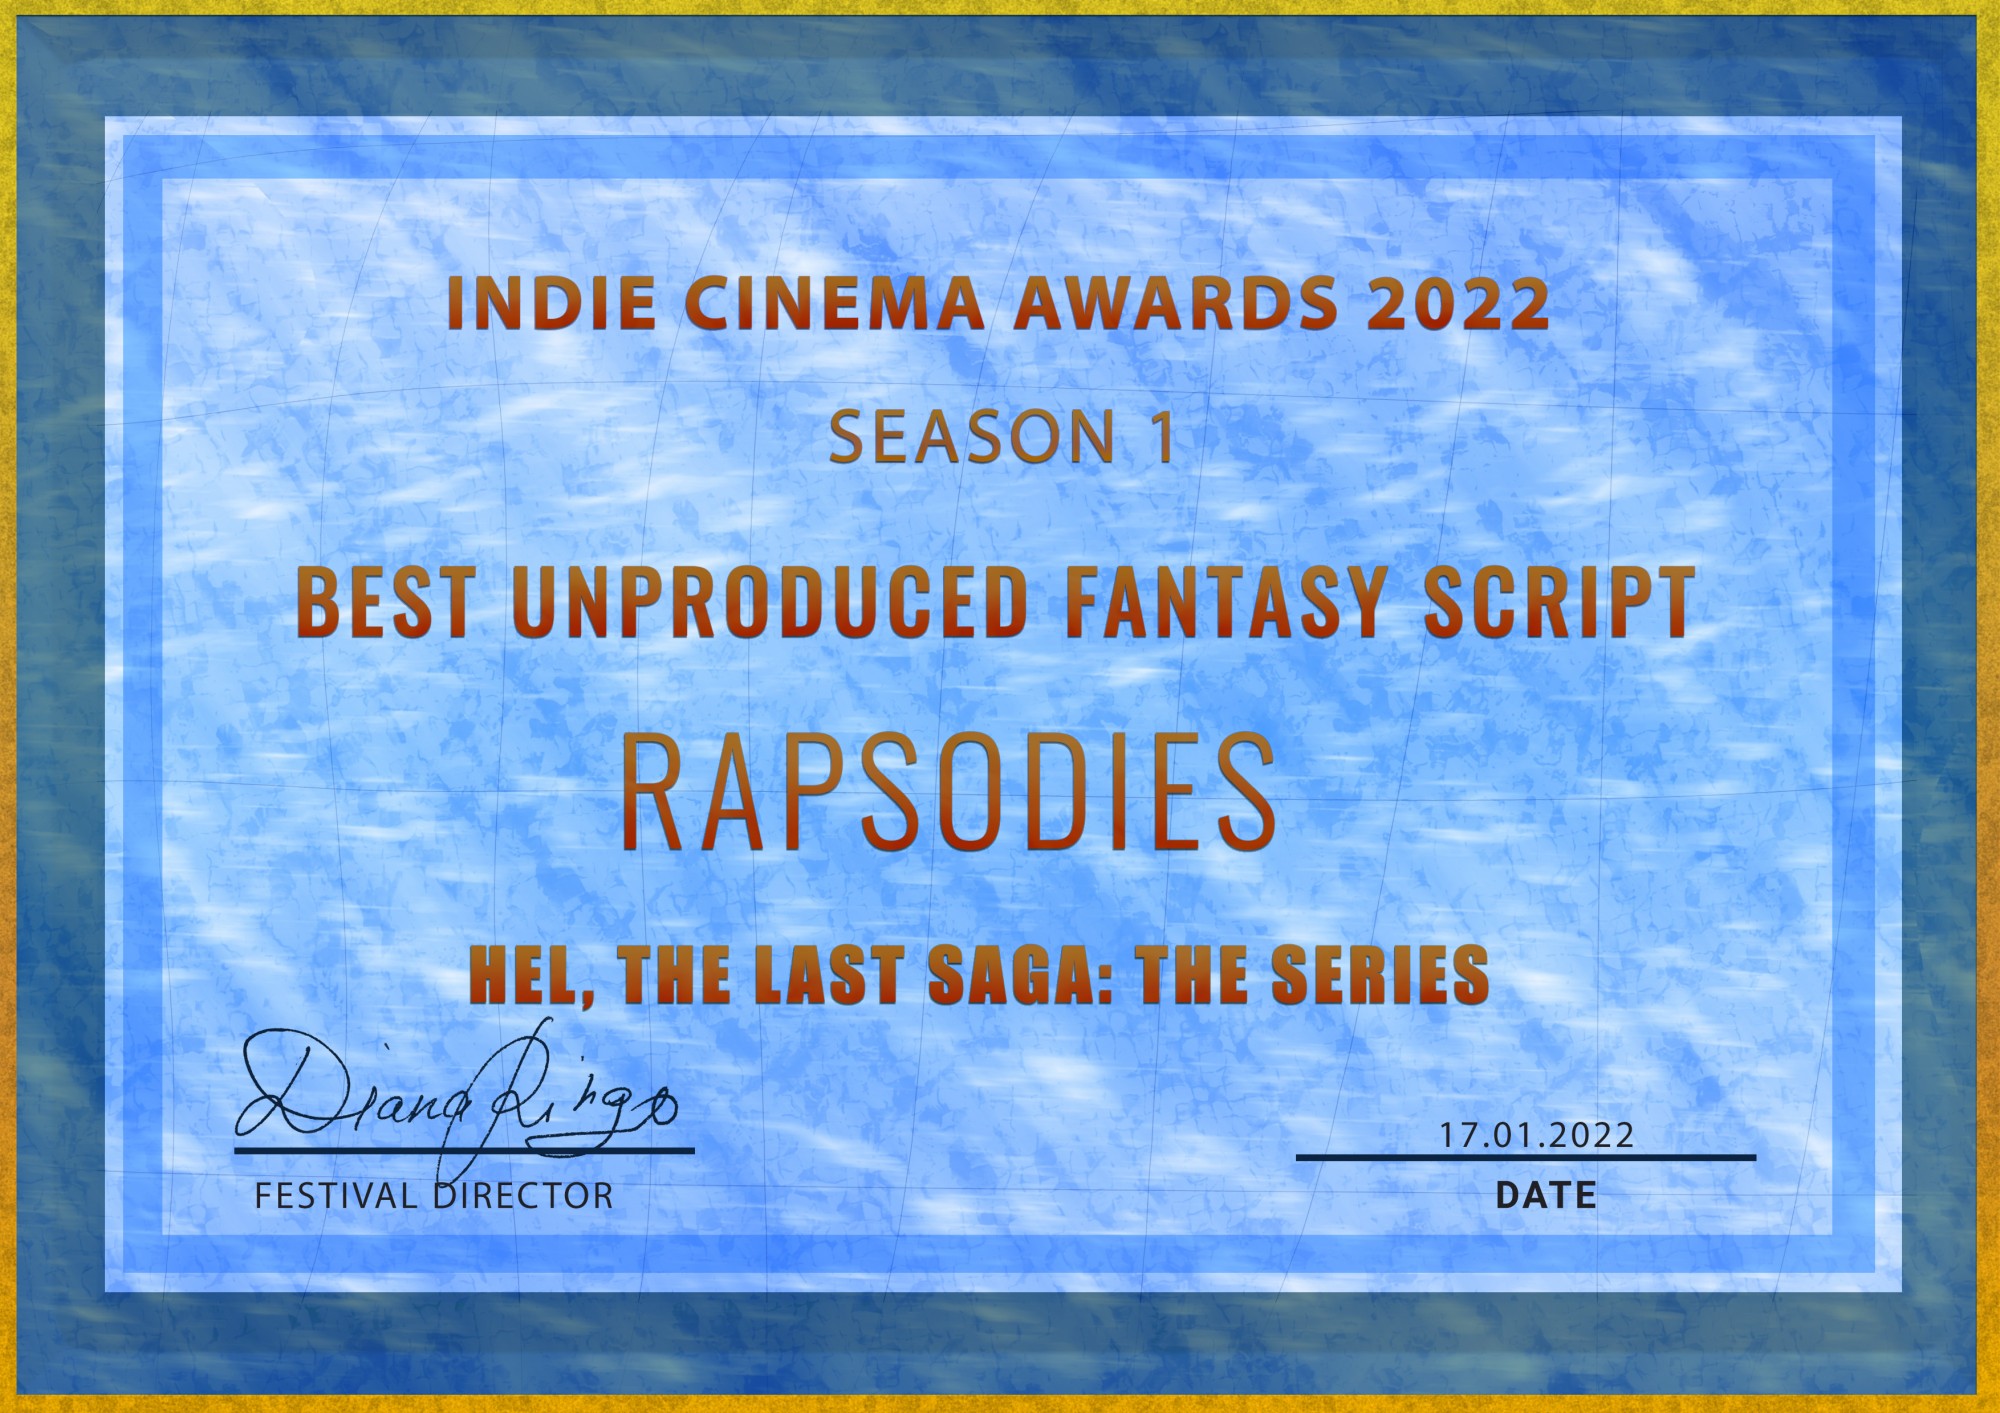 Hel, the last saga - Best Unproduced Fantasy Script - Winner